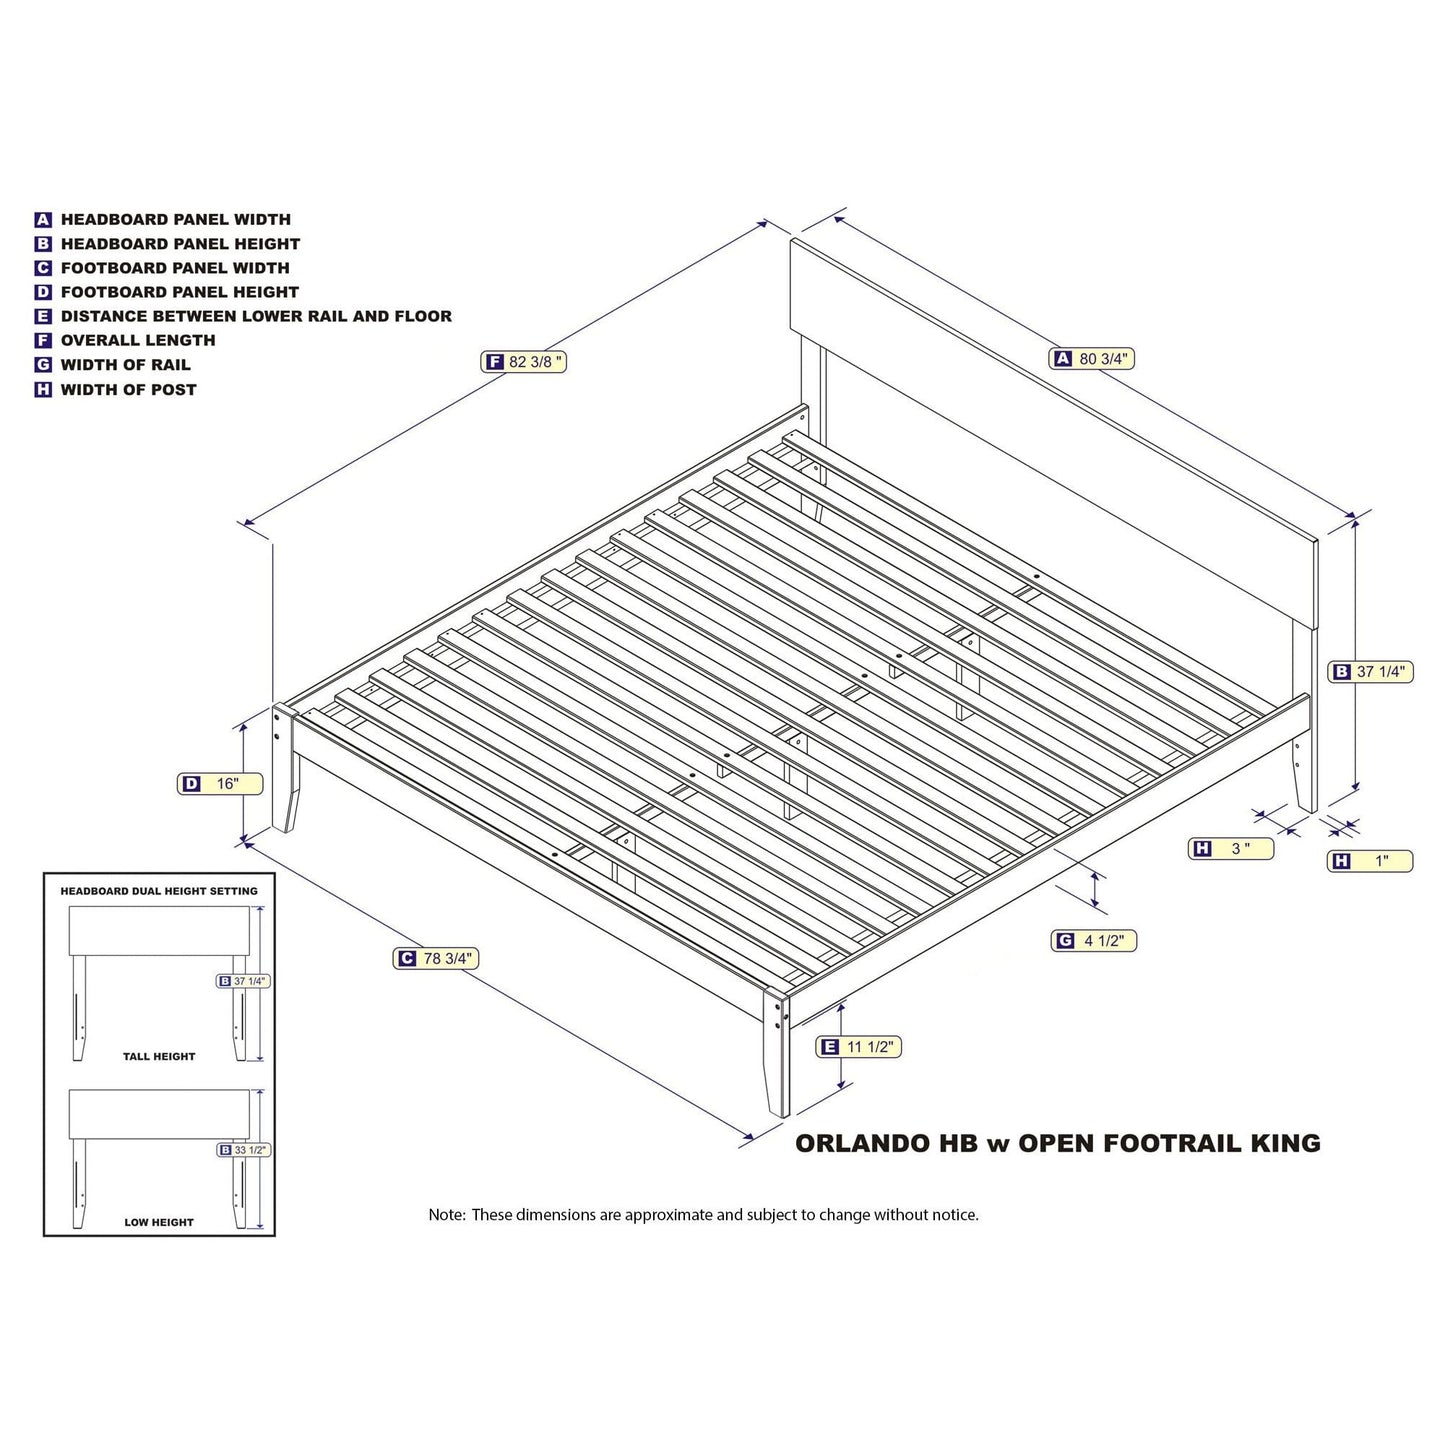 AFI Furnishings Orlando King Platform Bed in White AR8151002